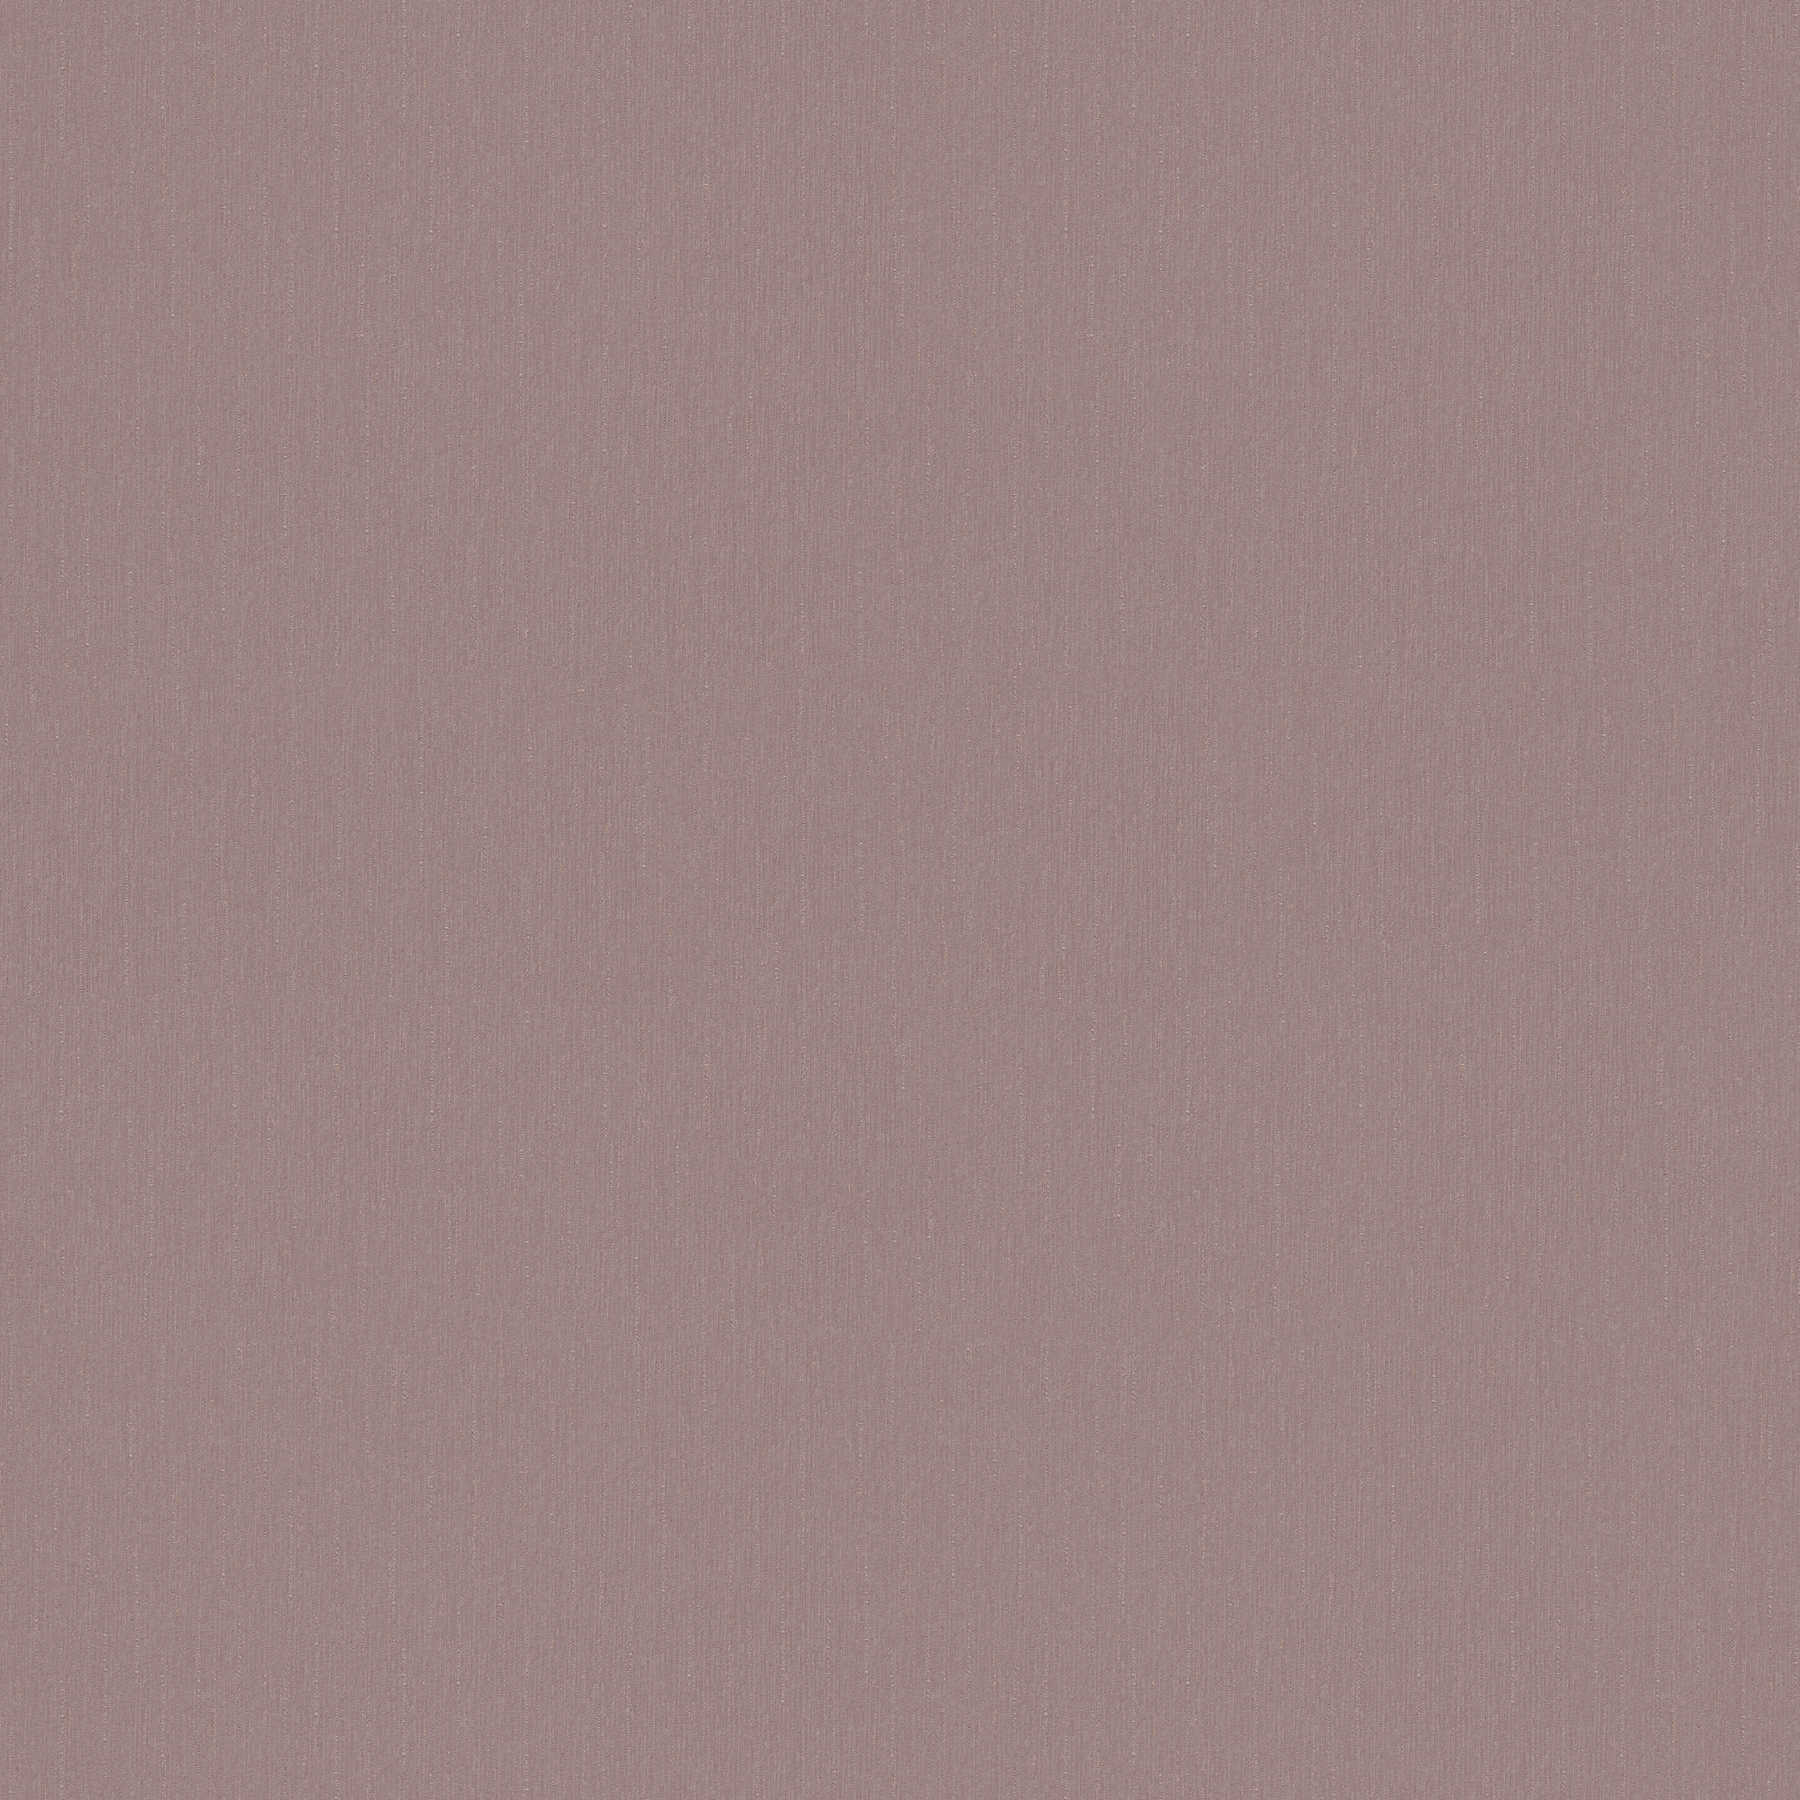 Papier peint gris lilas uni & mat - gris, rose
